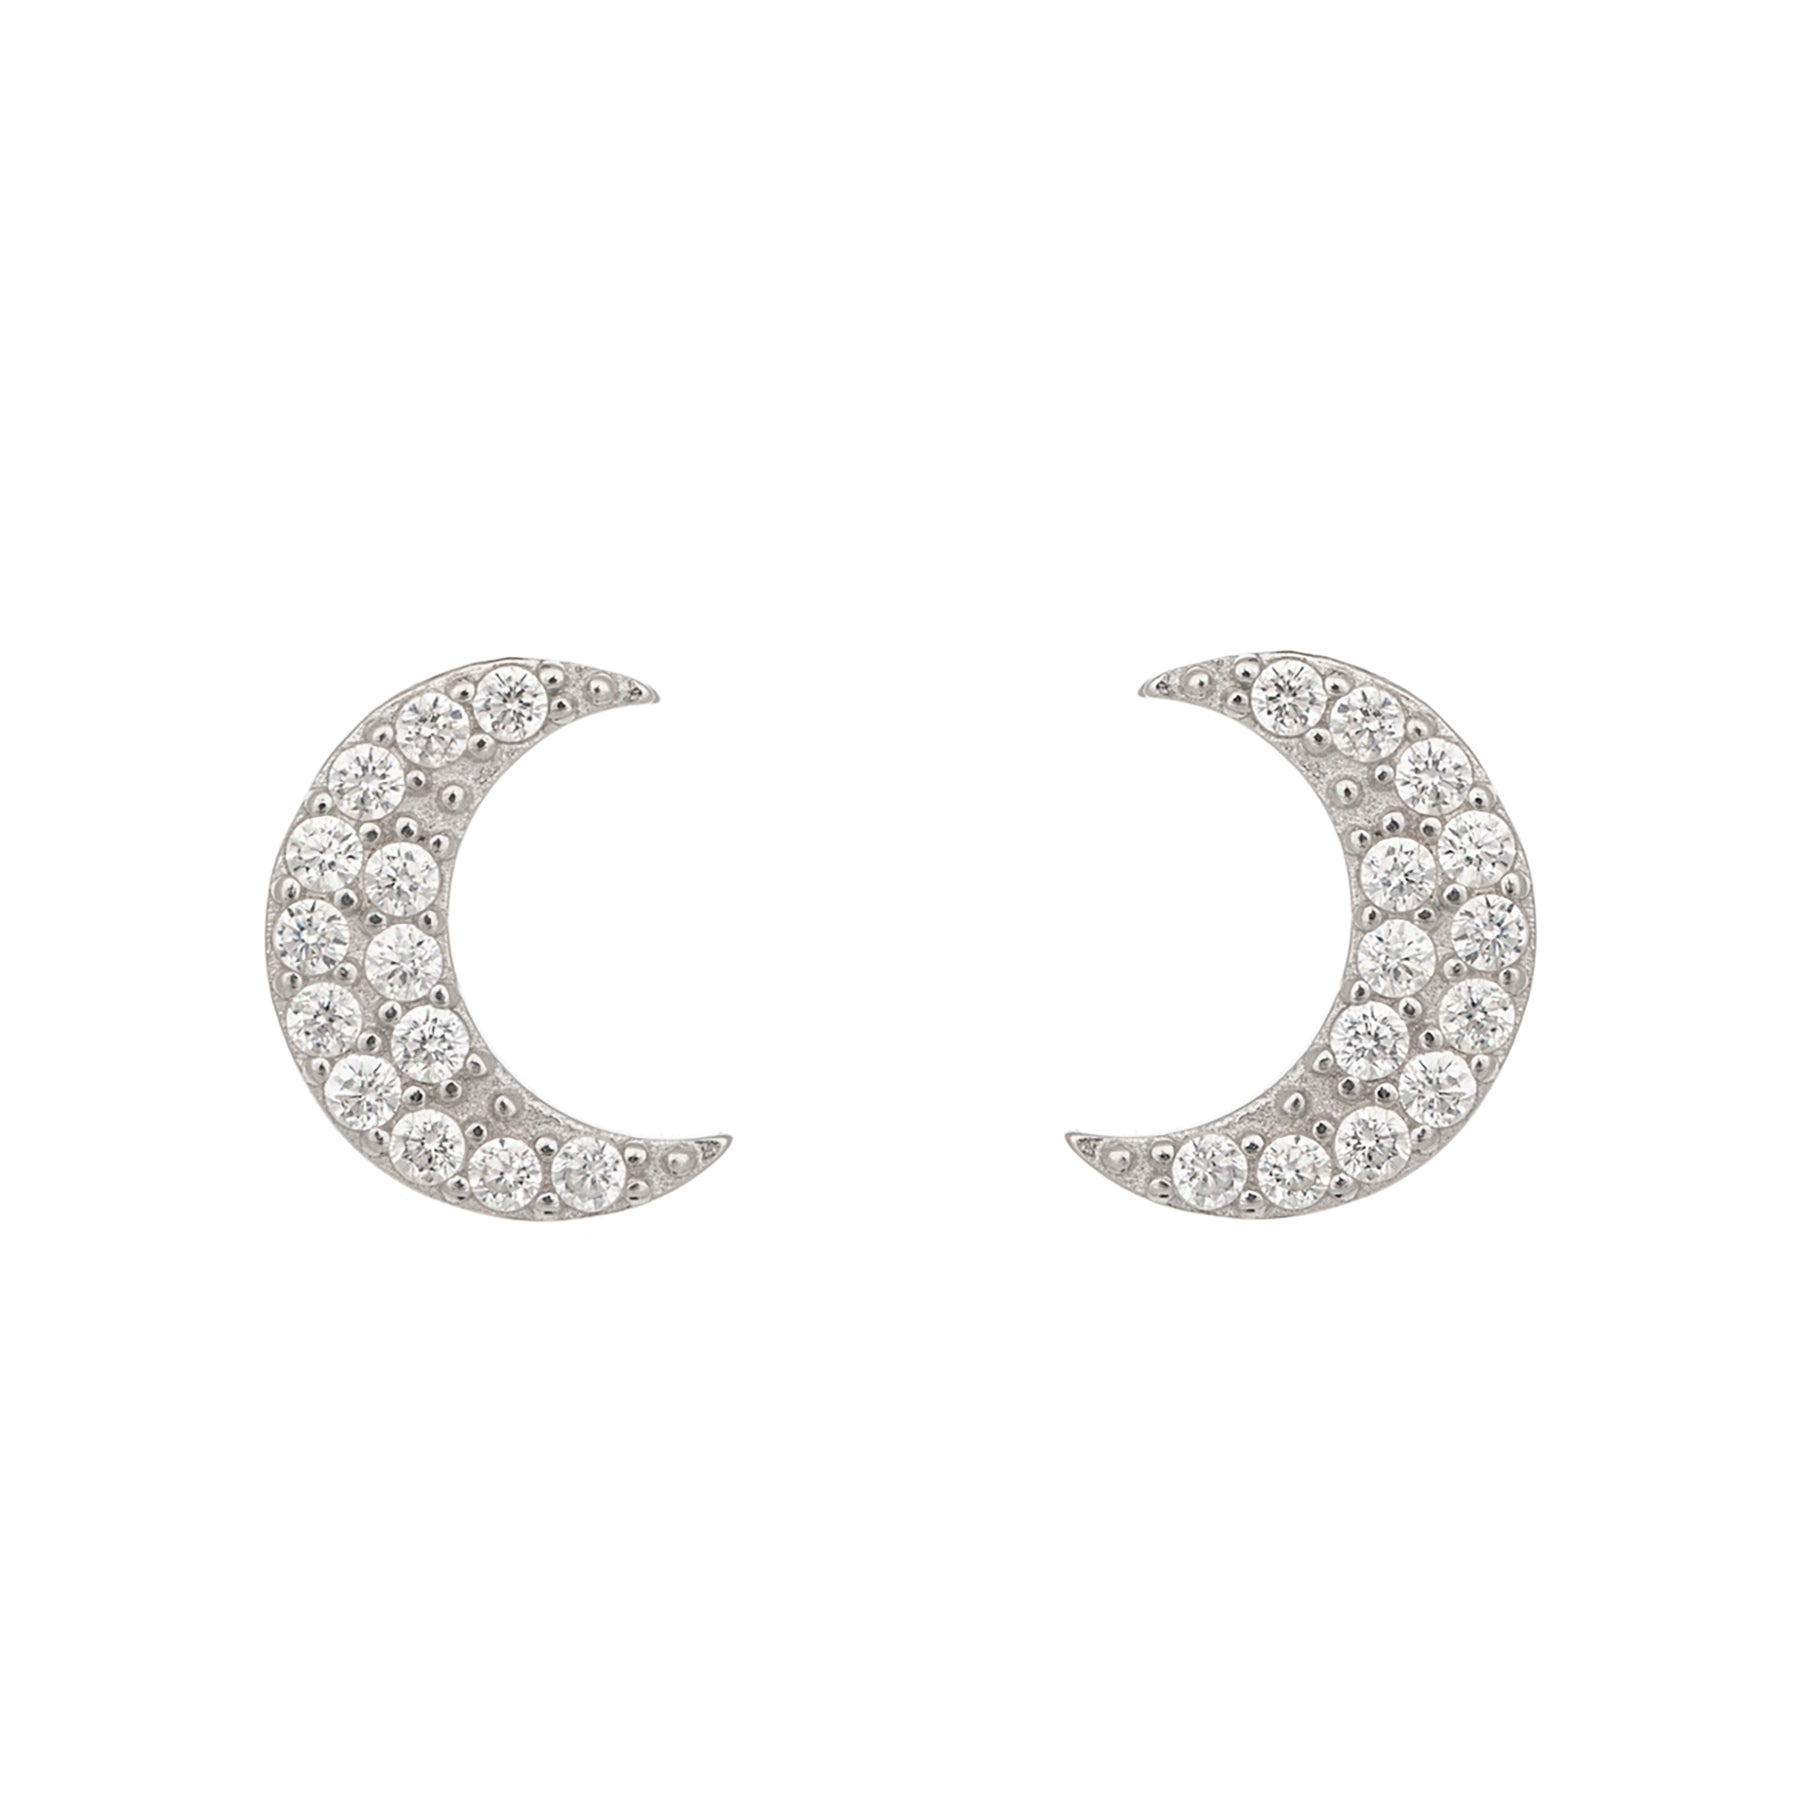 Glistening moon earrings